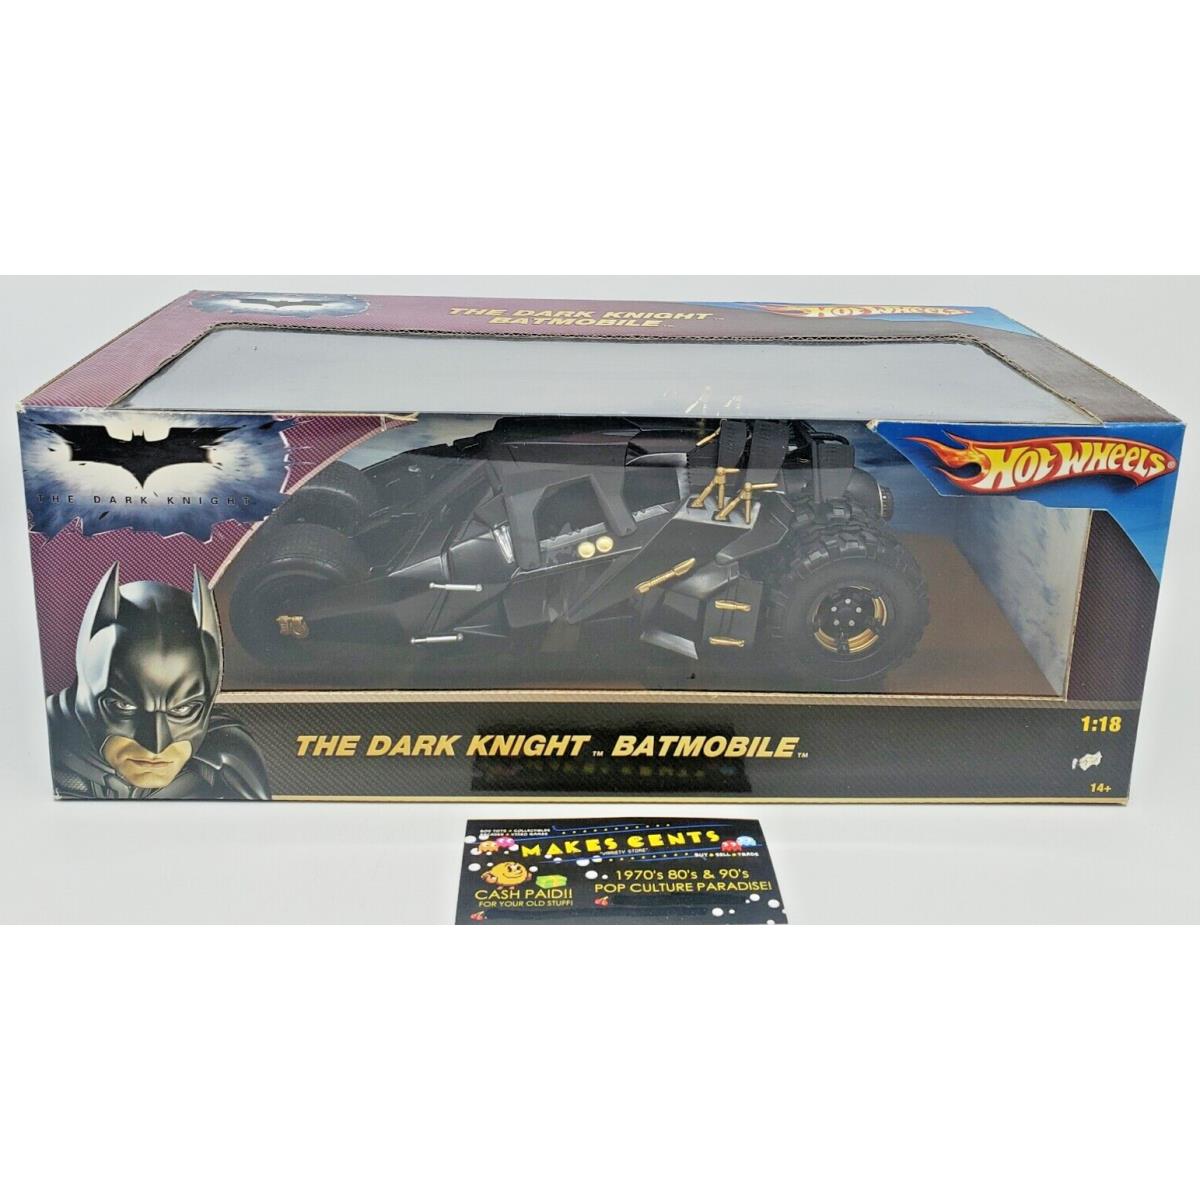 2008 Mattel Hot Wheels Batman The Dark Knight Batmobile 1:18 Scale